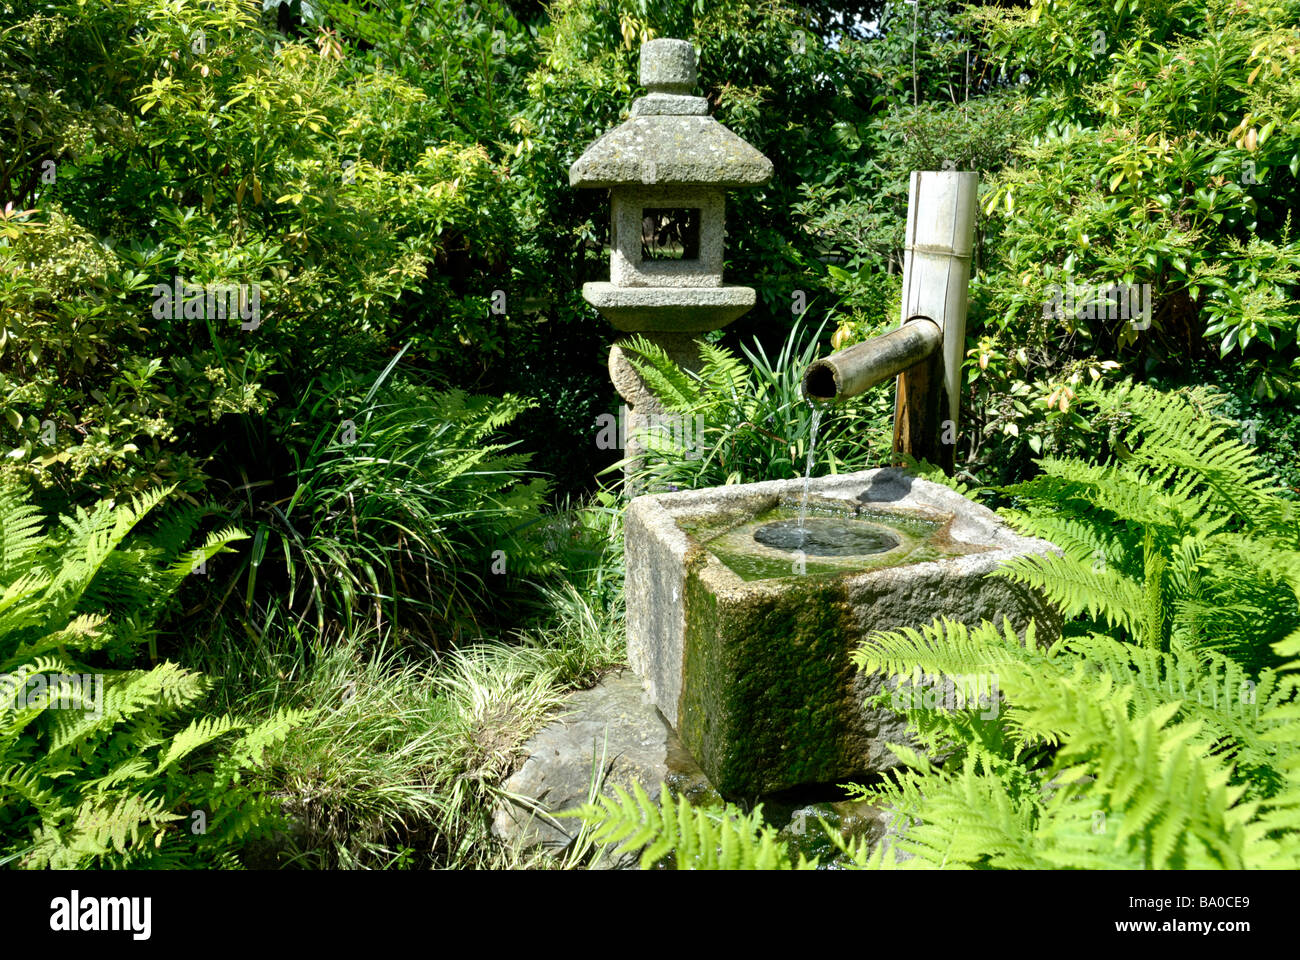 Voir d'eau entouré de feuillage aux Jardins botaniques royaux de Kew, Londres, Angleterre Banque D'Images